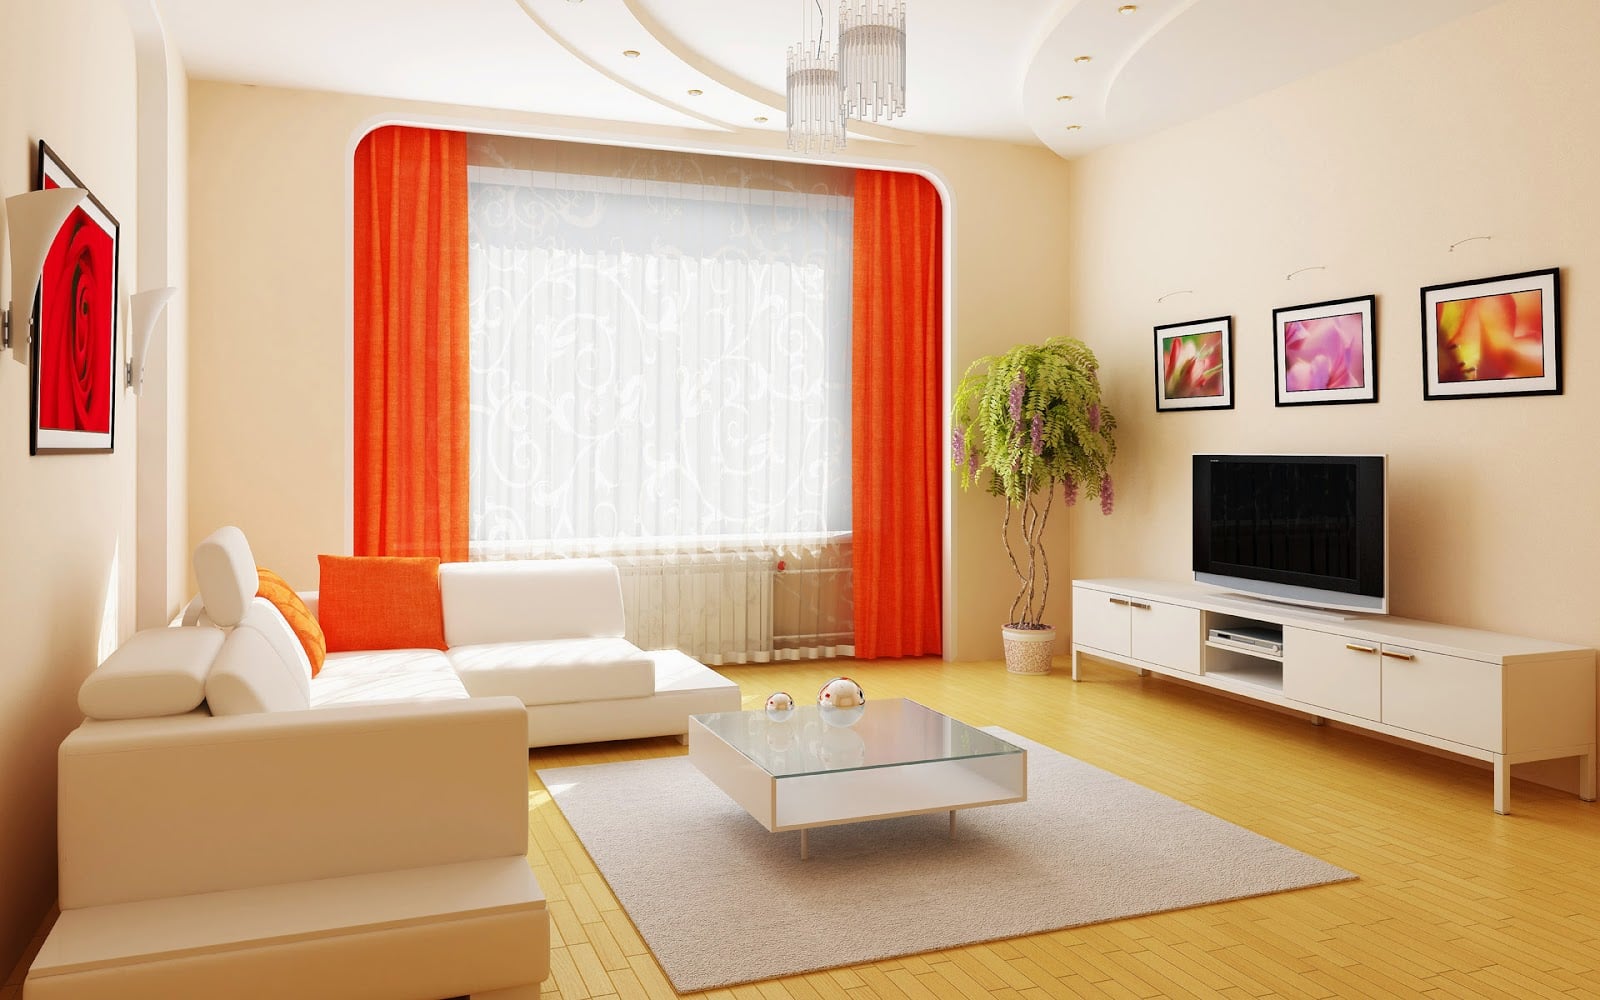 61 Ide Cantik Desain Interior Ruang Tamu Minimalis Sederhana Yang Belum Banyak Diketahui